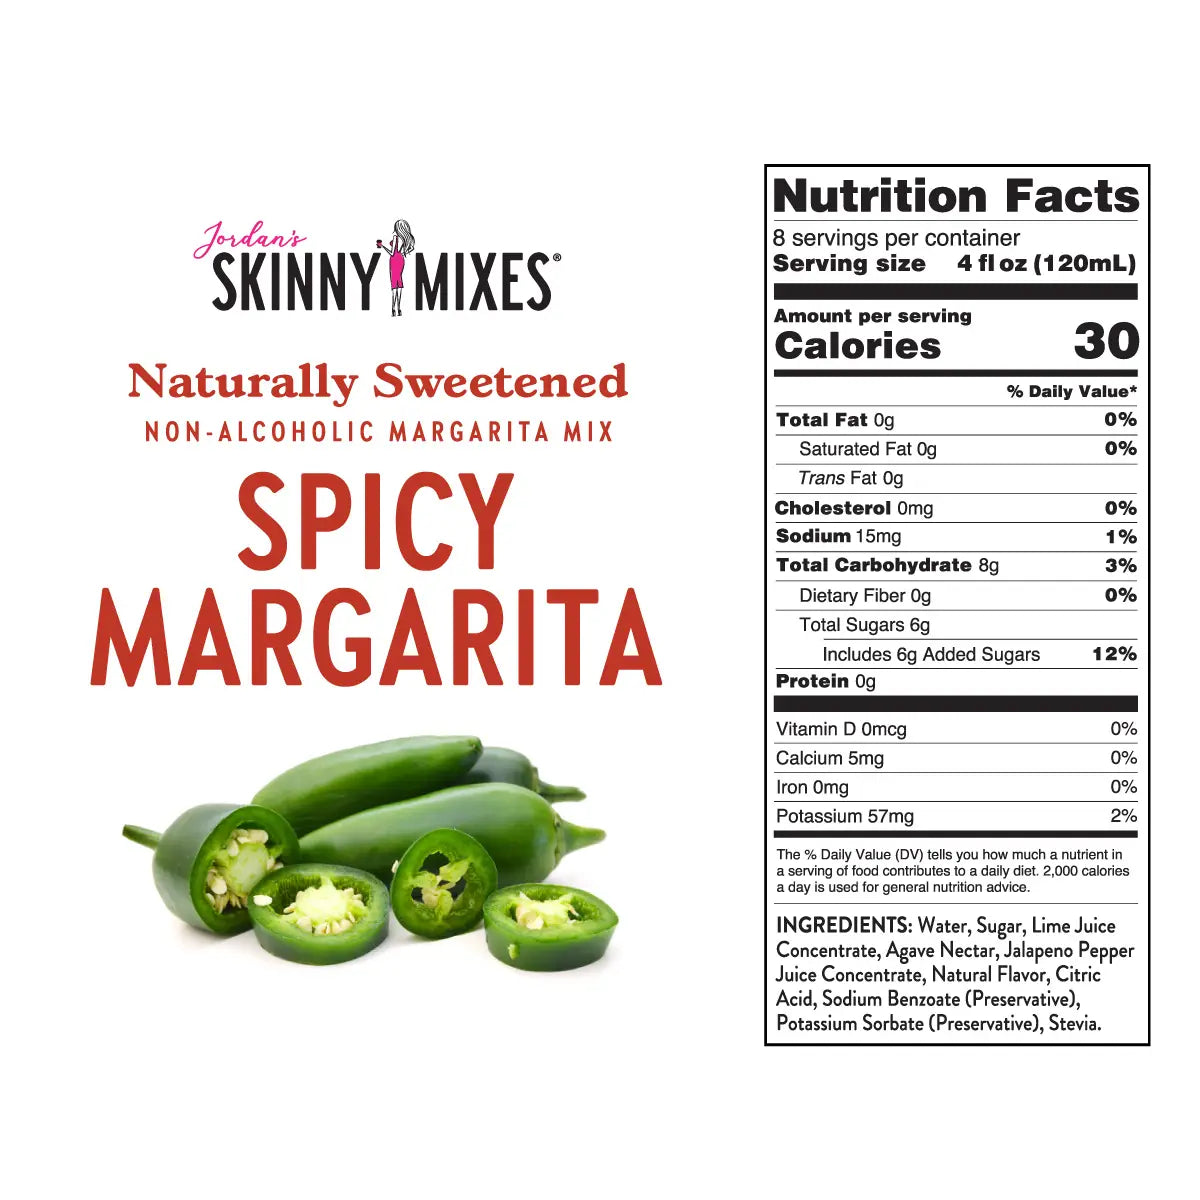 Skinny Margarita Mixers